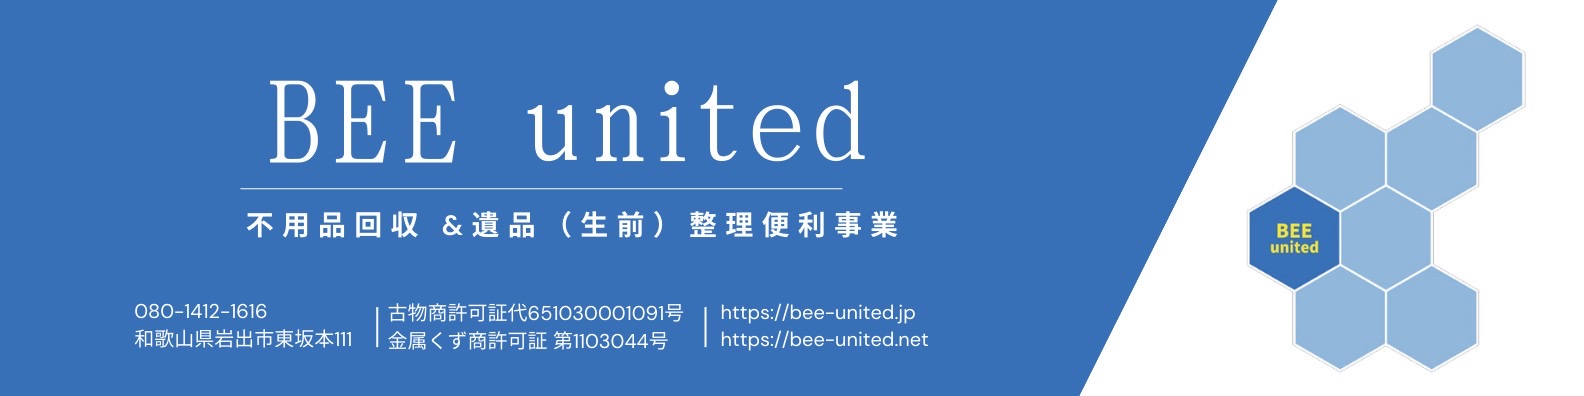 (株)BEE united